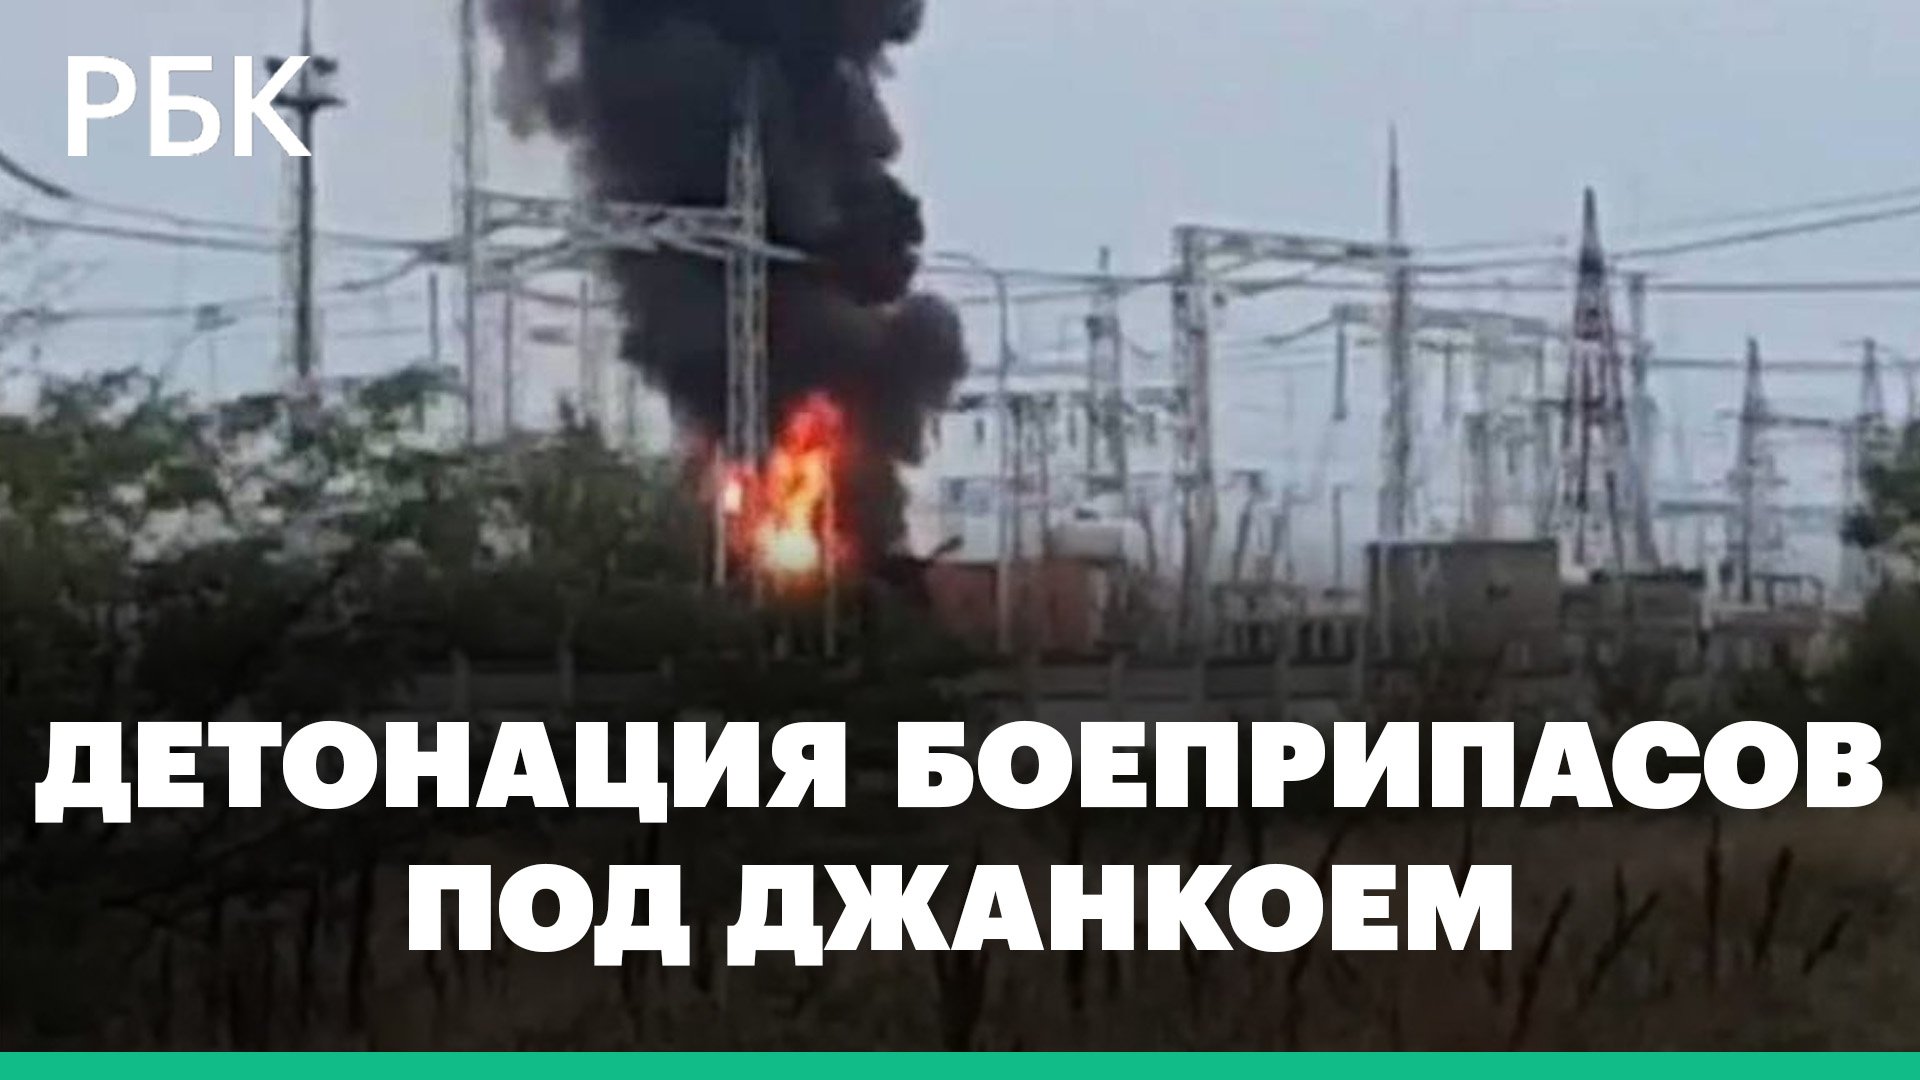 Что известно о взрывах и пожаре на севере Крыма: детонация боеприпасов, эвакуация 2 тыс. жителей